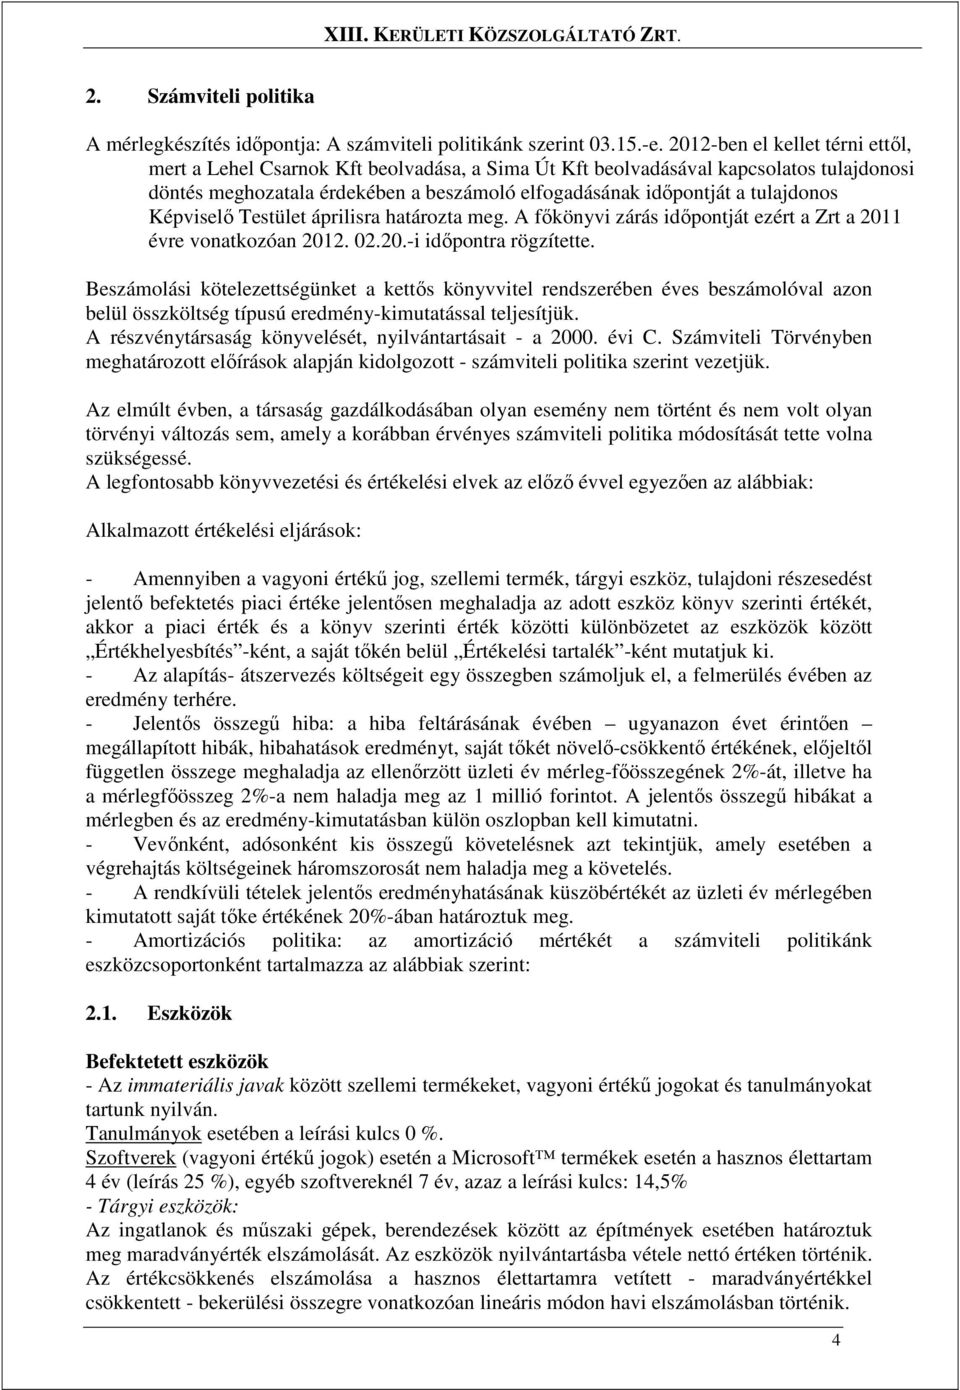 Képviselı Testület áprilisra határozta meg. A fıkönyvi zárás idıpontját ezért a Zrt a 2011 évre vonatkozóan 2012. 02.20.-i idıpontra rögzítette.